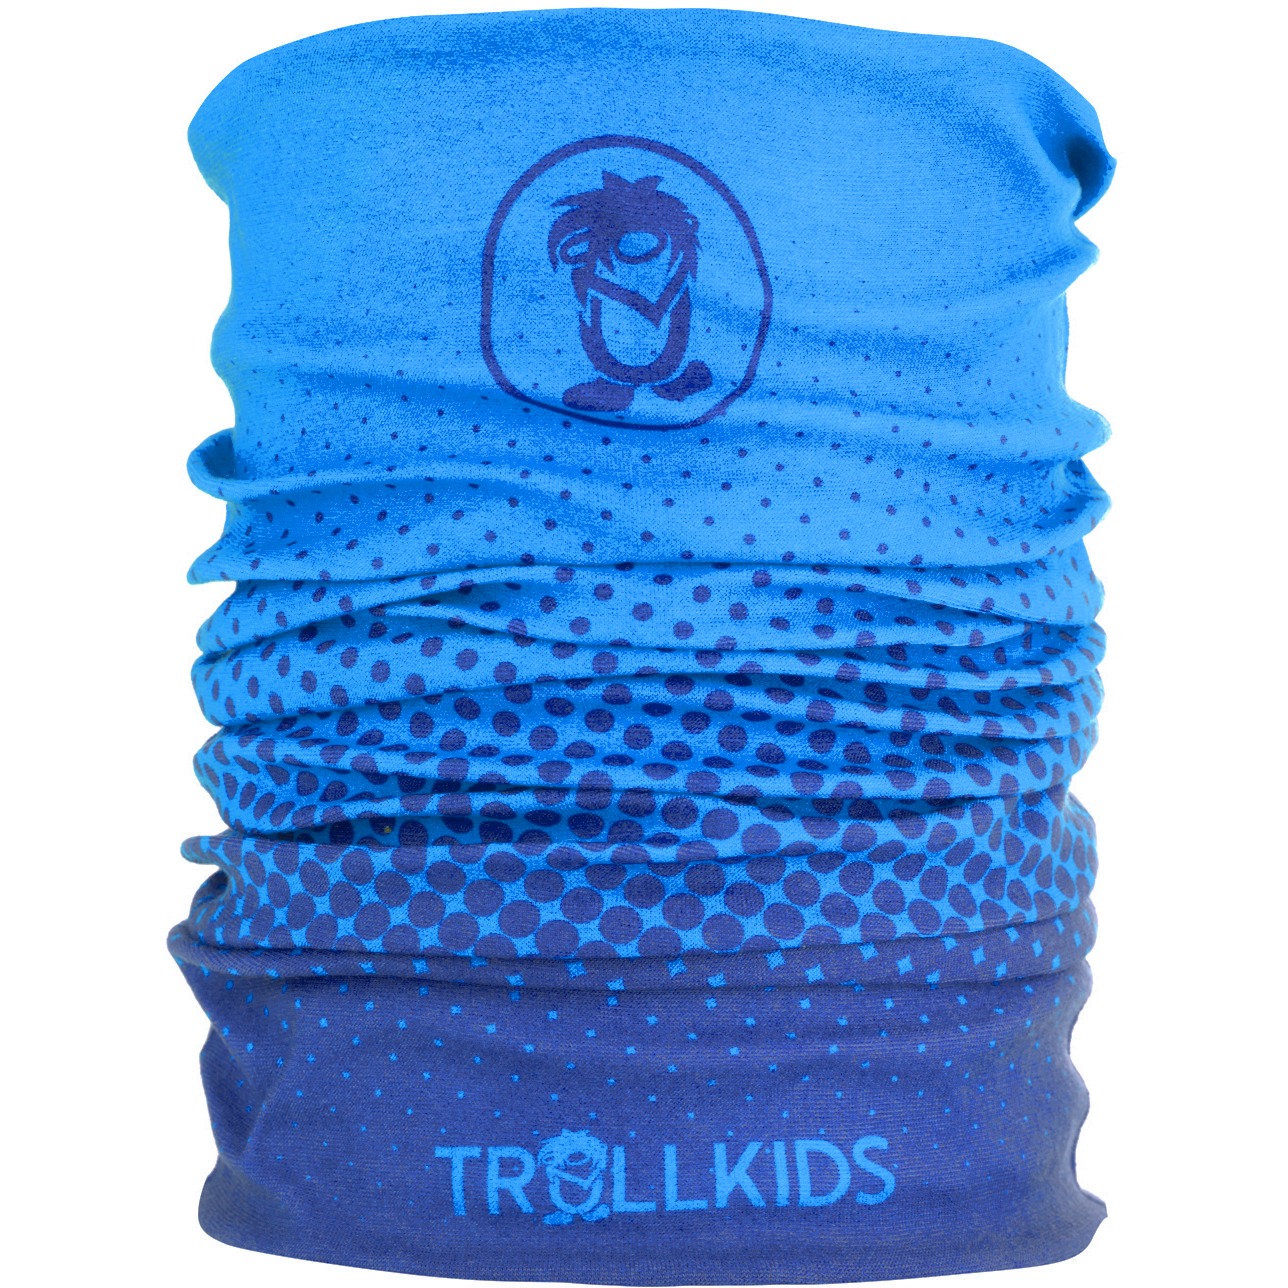 Productfoto van Trollkids Pointilism Kinder Multifunctionele Doek - Navy/Medium Blue